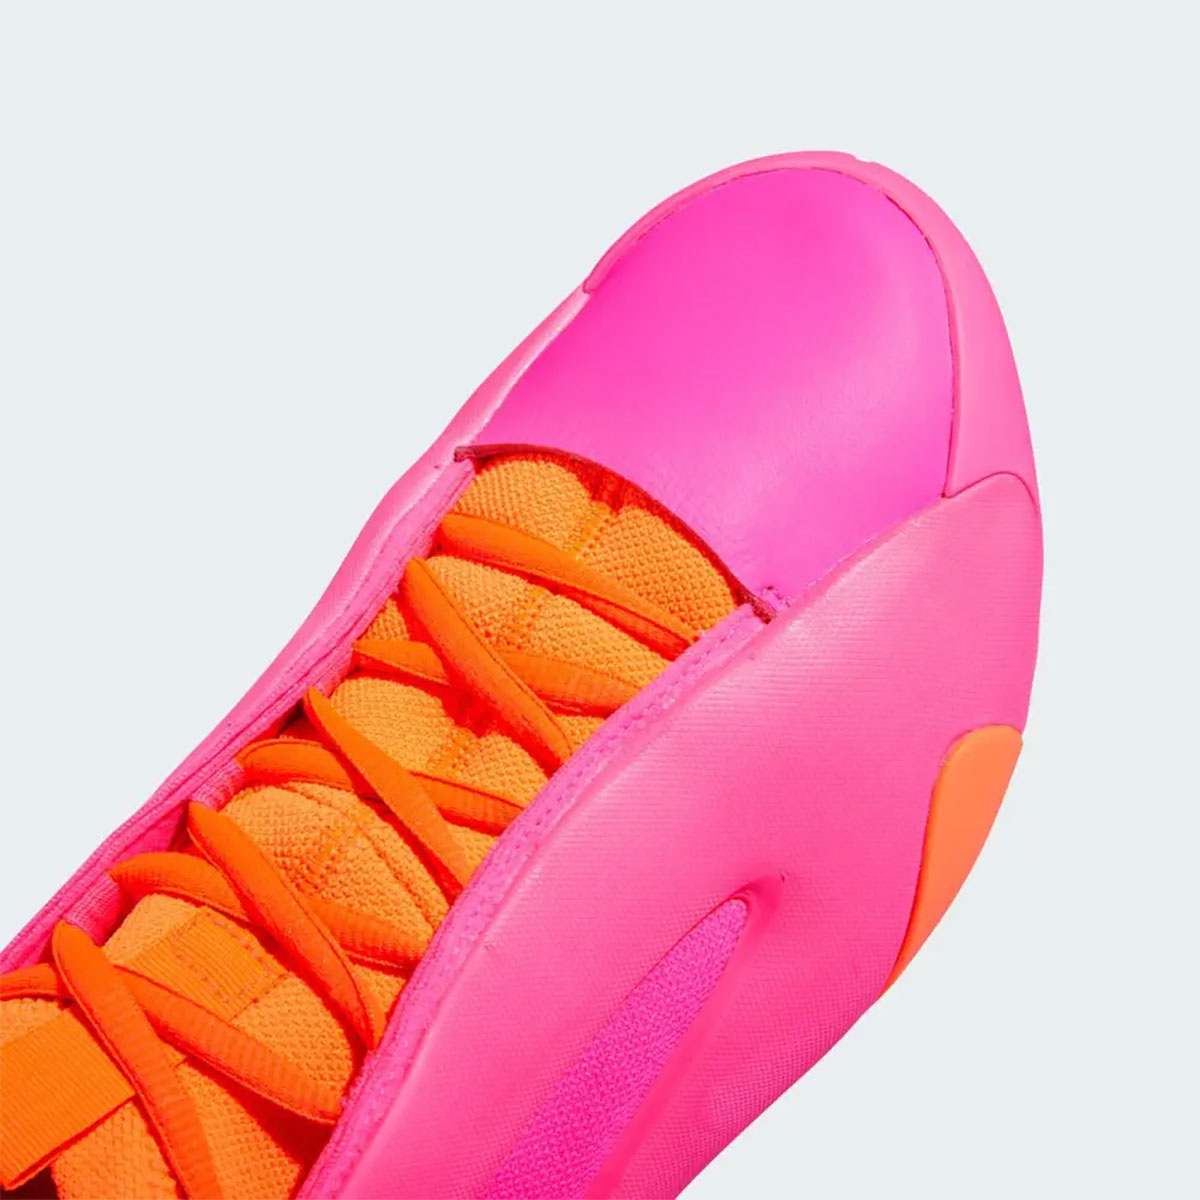 adidas walmart Harden Vol 8 Flamingo Pink Ie2698 Release Date 7